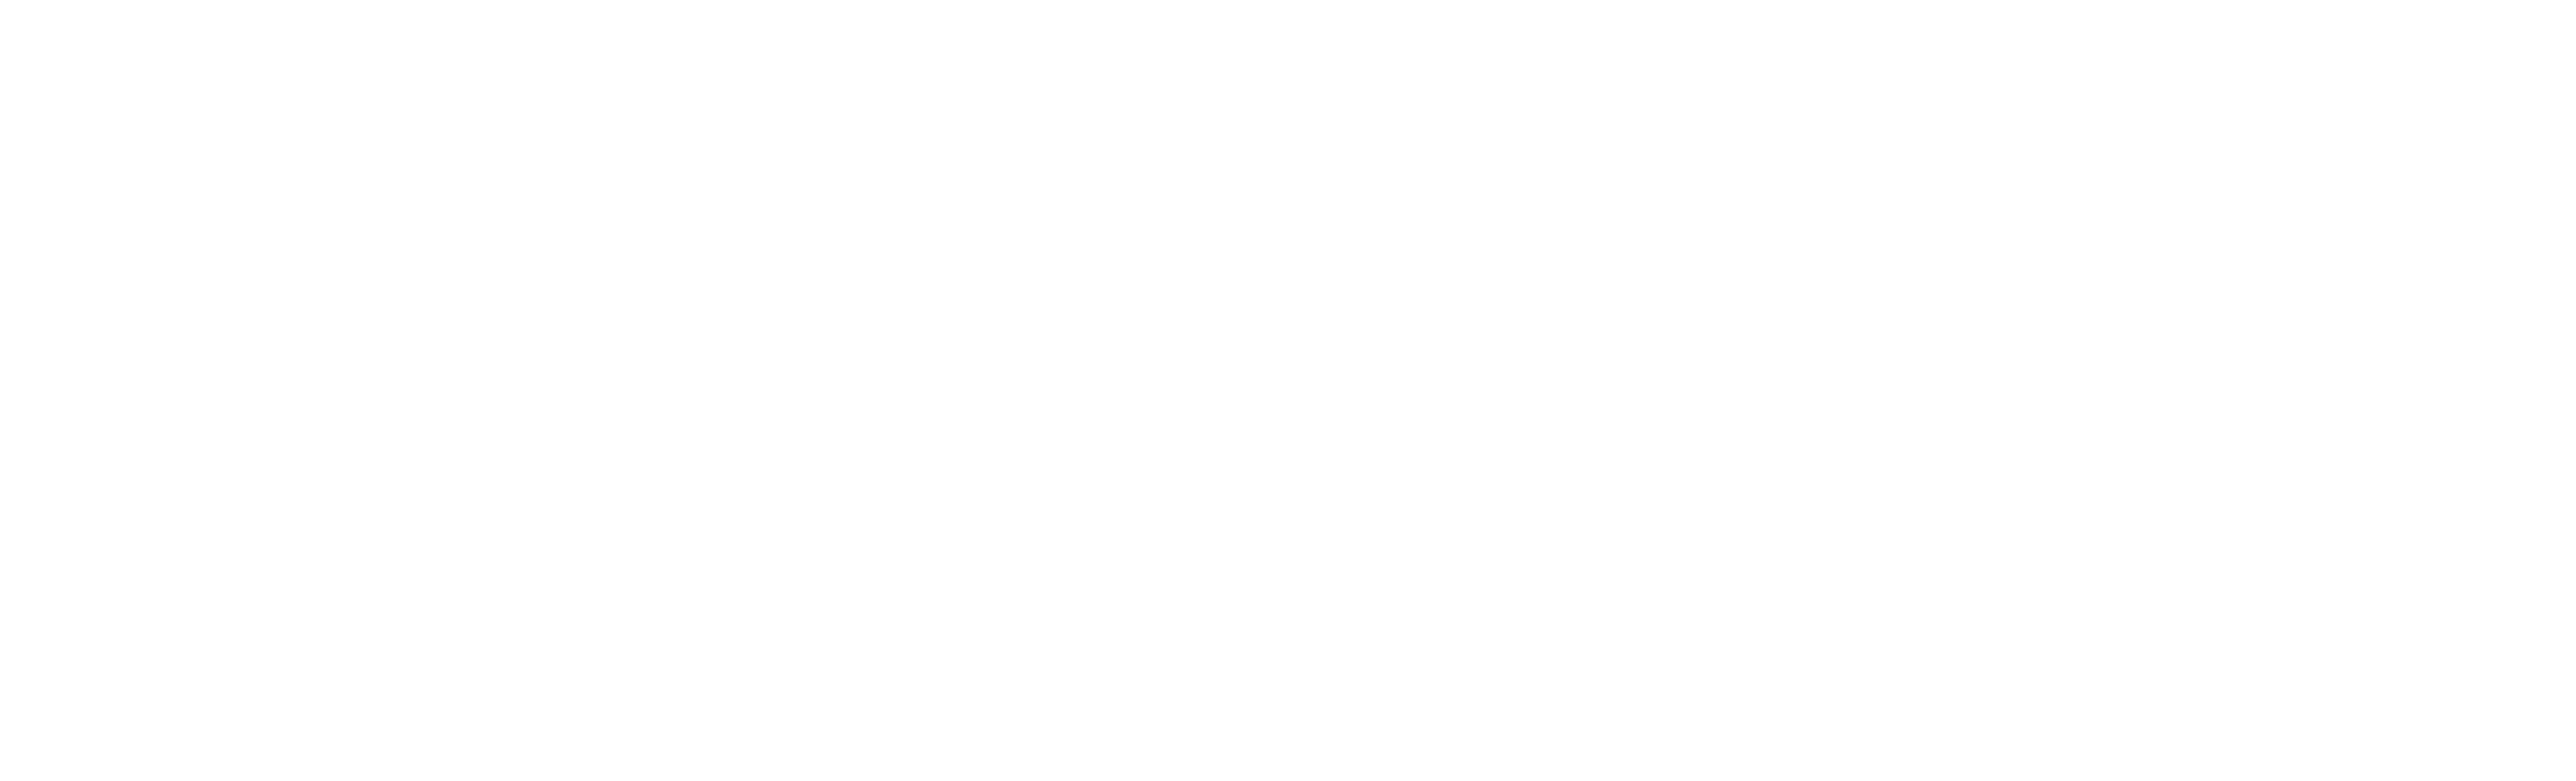 Elephantic - Tu tienda online de fotografía, telefonía móvil y electrónica de consumo